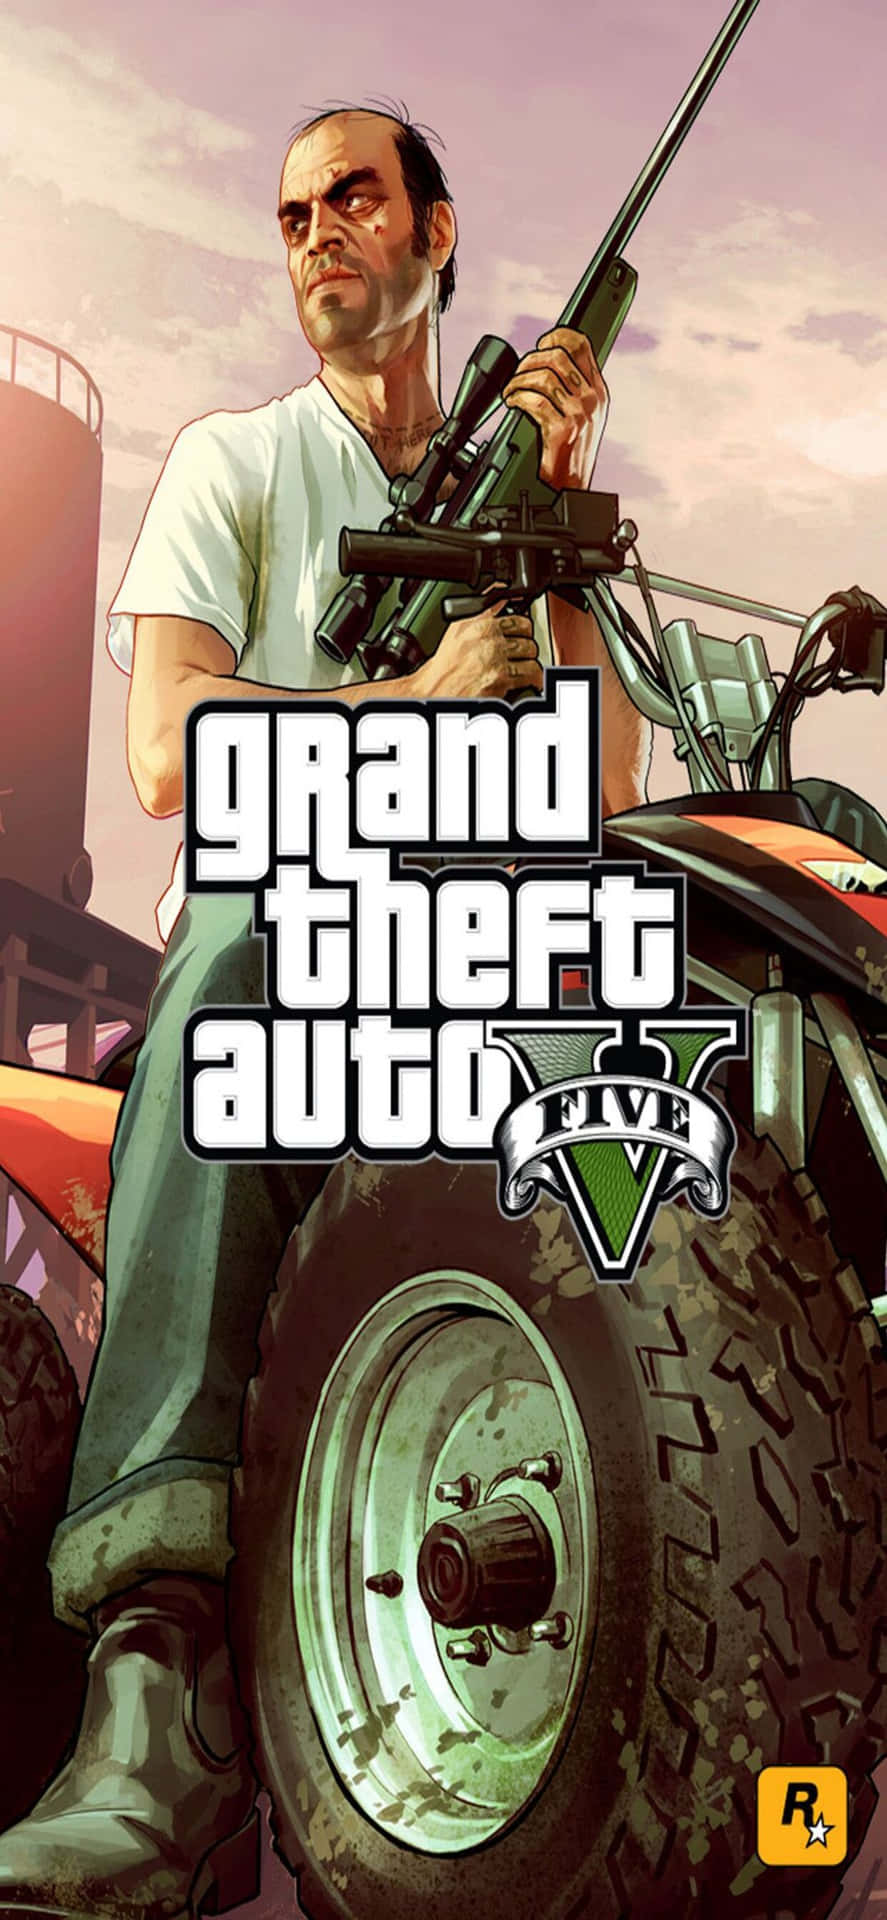 Iphonexs Max Bakgrundsbild För Grand Theft Auto V Trevor Rider På En Atv.